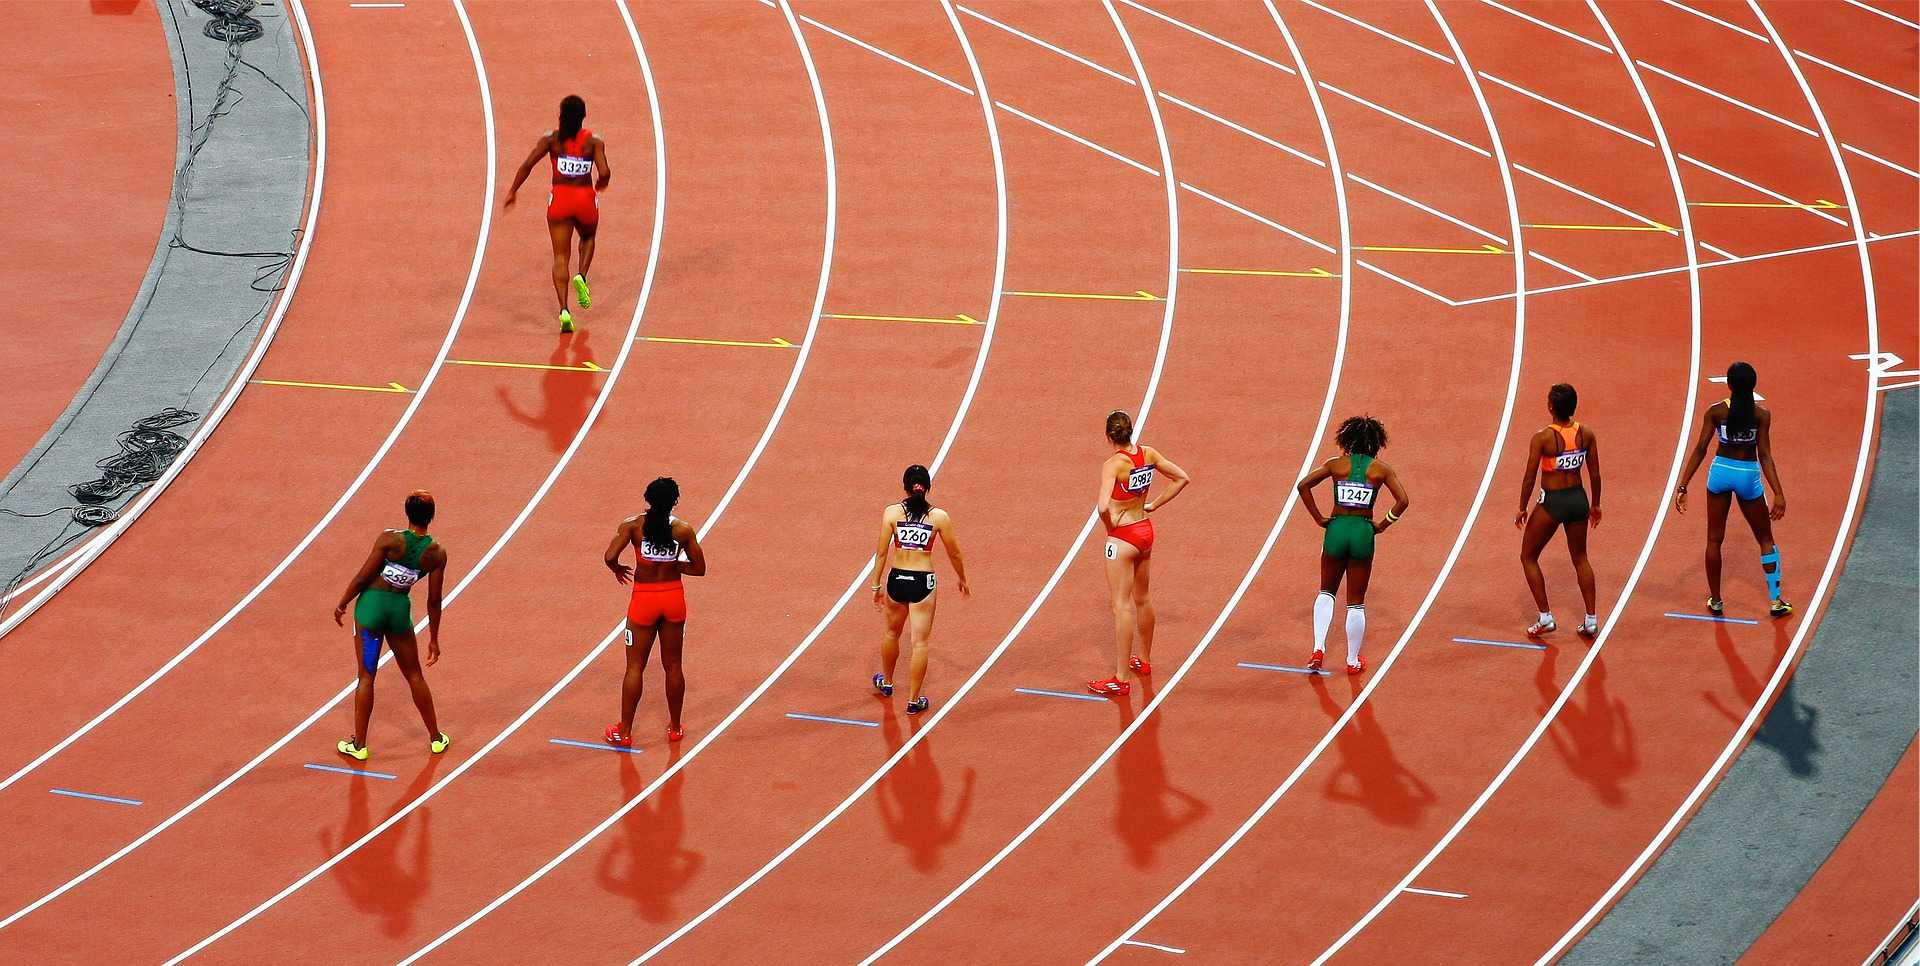 Slika se uporablja za članek CBG in športniki, na sliki je tekmovanje o teku, kjer so tekačice na progi pred začetkom tekme.